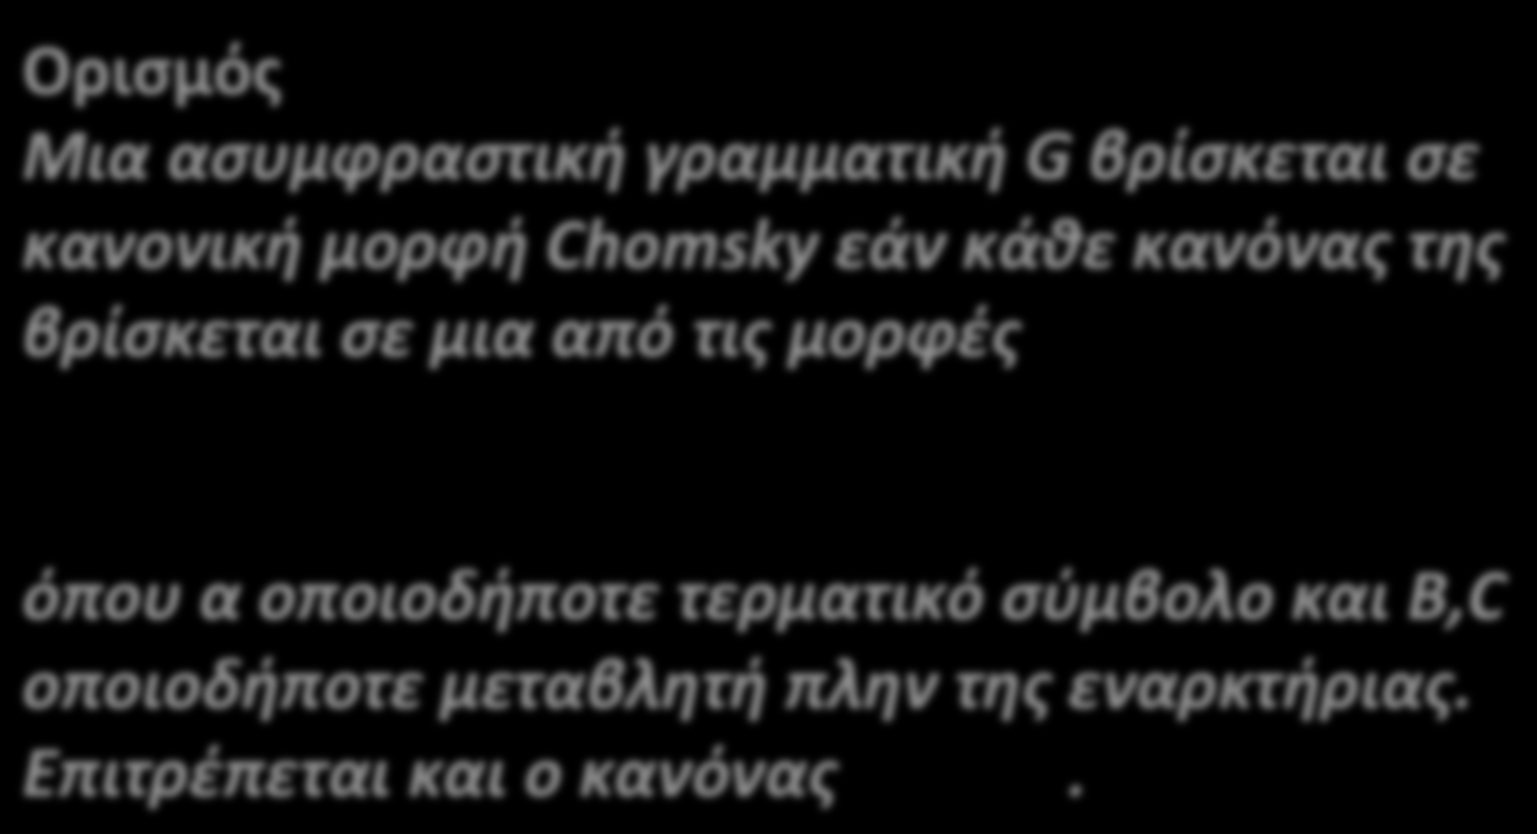 Κανονική μορφή Chomsky Ορισμός Μια ασυμφραστική γραμματική G βρίσκεται σε κανονική μορφή Chomsky εάν κάθε κανόνας της βρίσκεται σε μια από